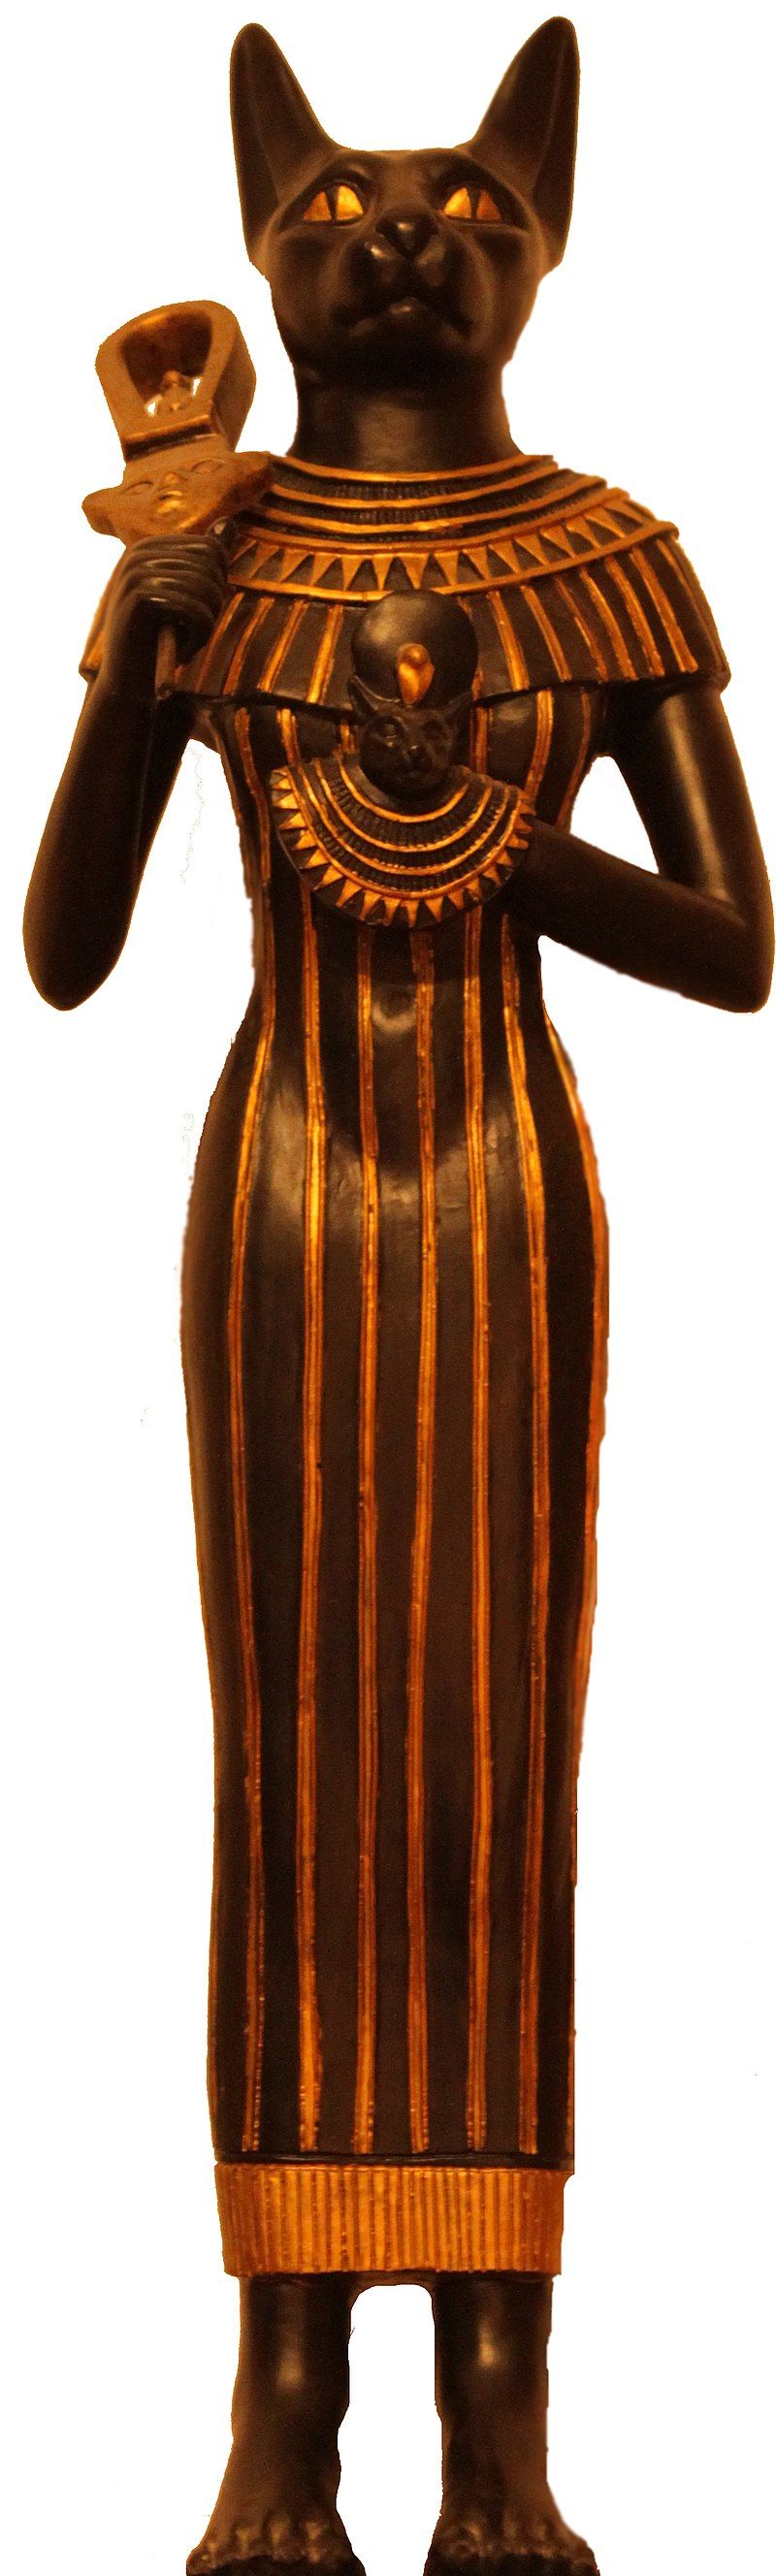 Representación de un antiguo antetipo, en el que se puede observar a Bastet retrata como una deidad femenina con cabeza de gato.